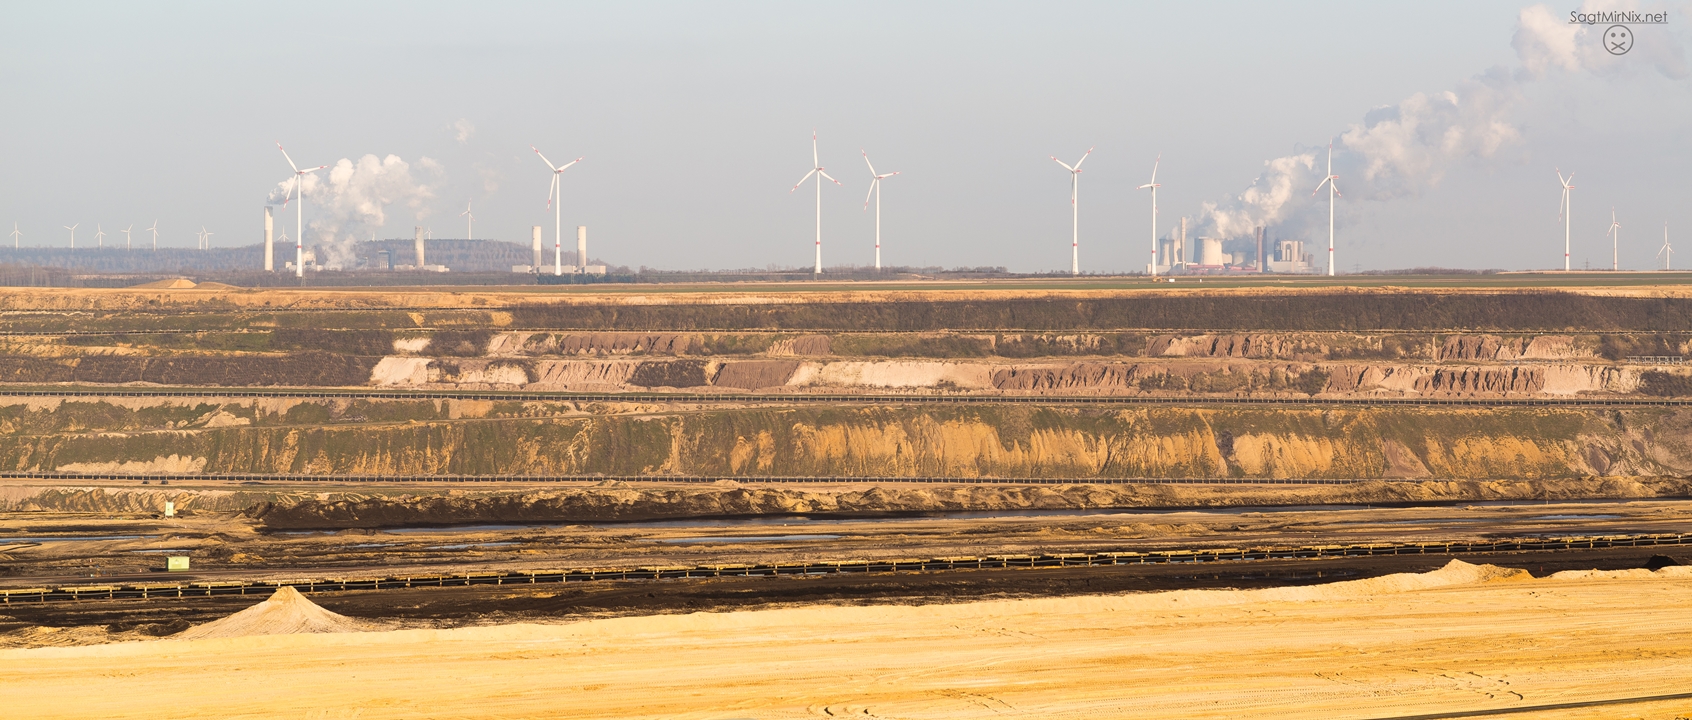 Tagebau Garzweiler: Windenergie und Kohlekraftwerke